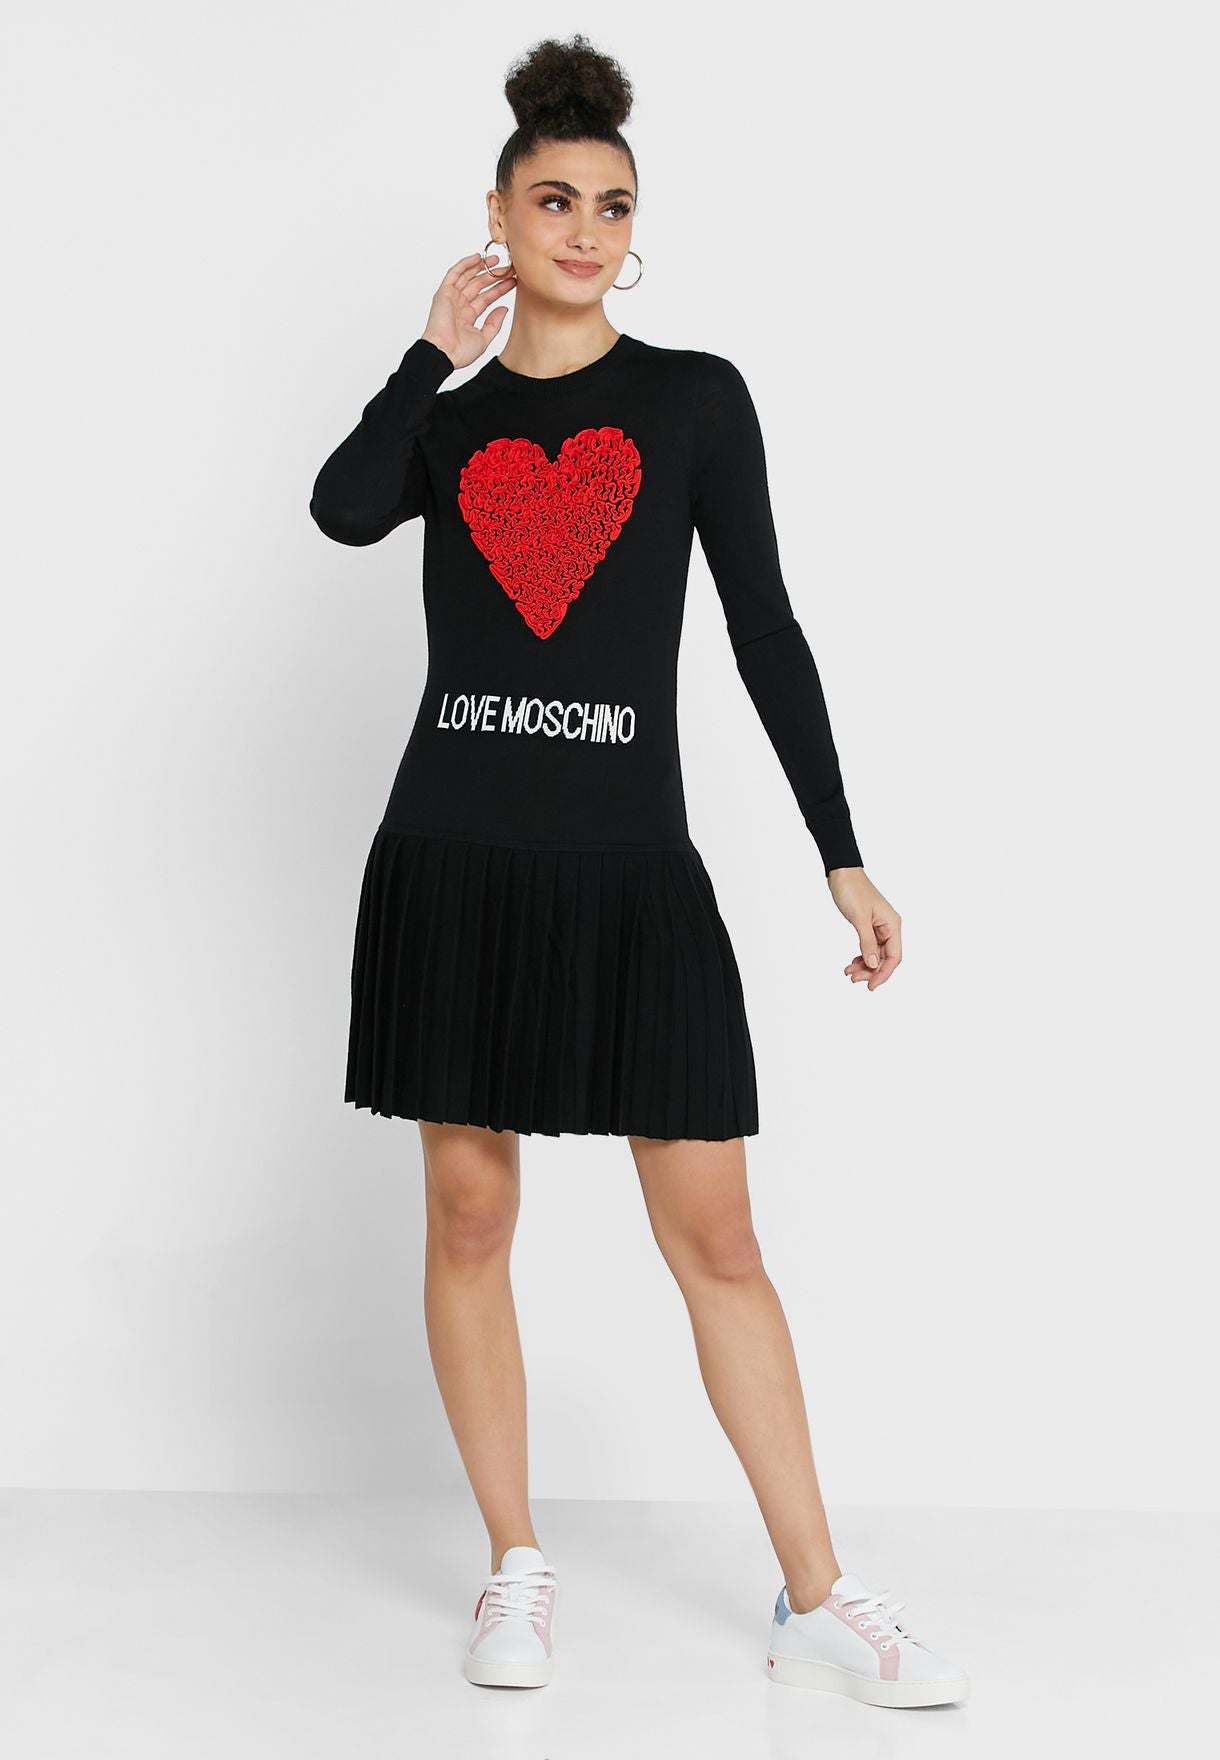 Love Moschino Black Acrylic Dress - DEA STILOSA MILANO